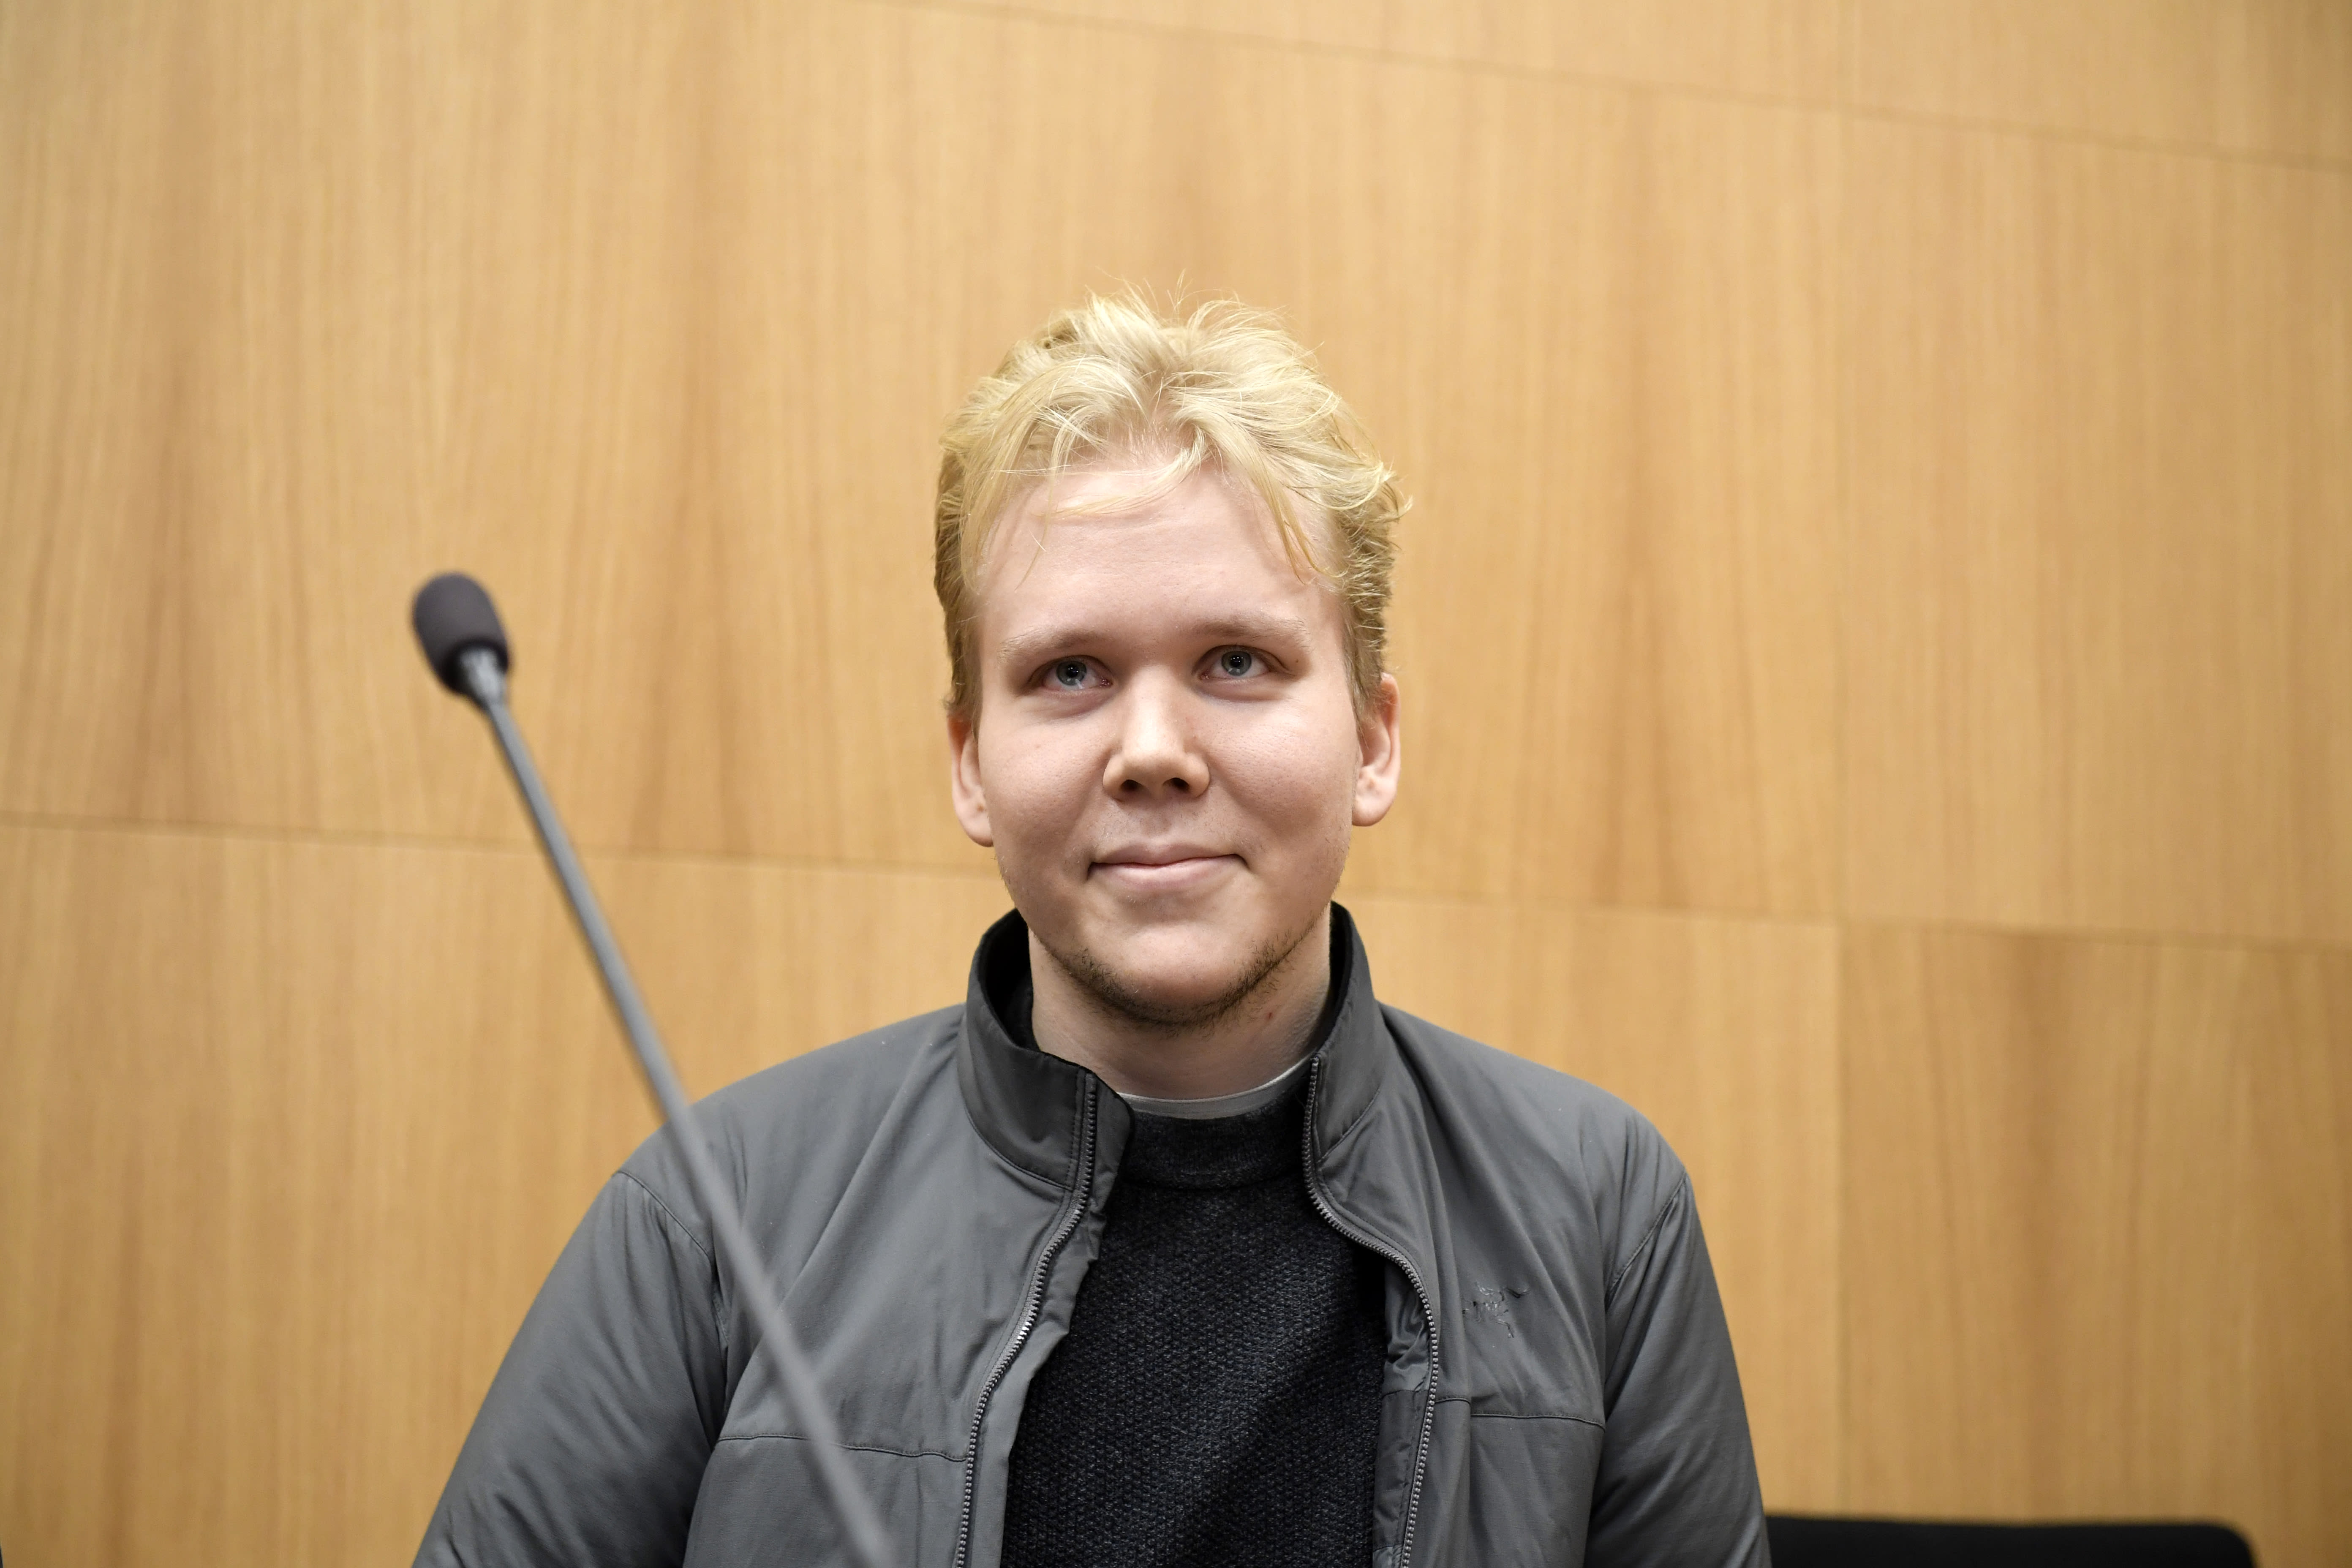 Aleksanteri Kivimäki was imprisoned for hacking Vastaamo